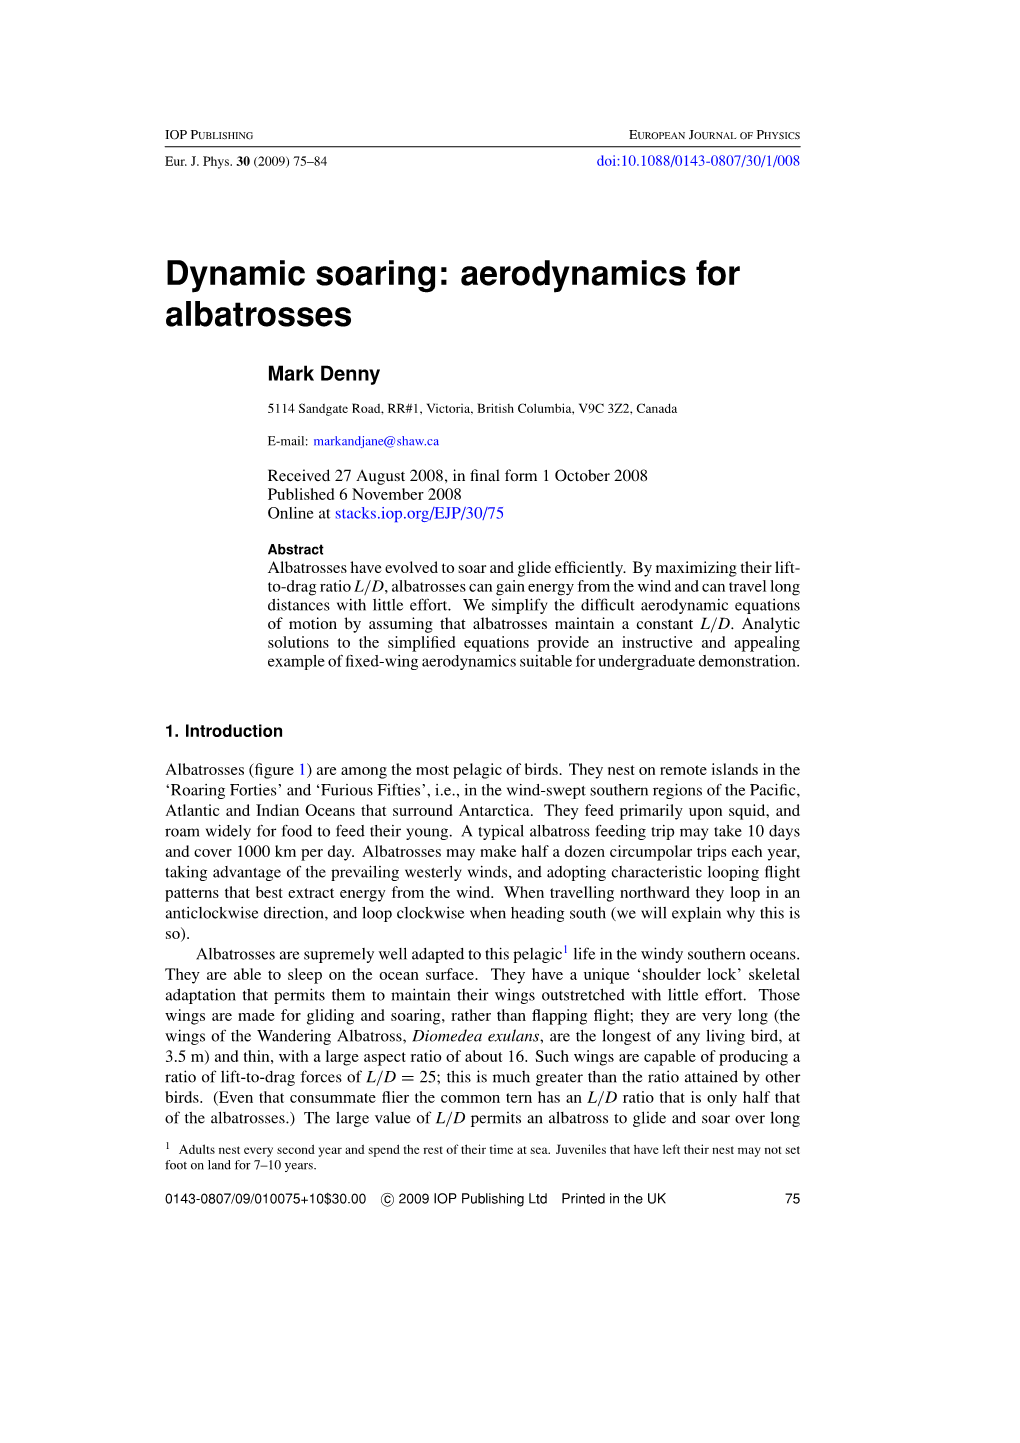 Dynamic Soaring: Aerodynamics for Albatrosses